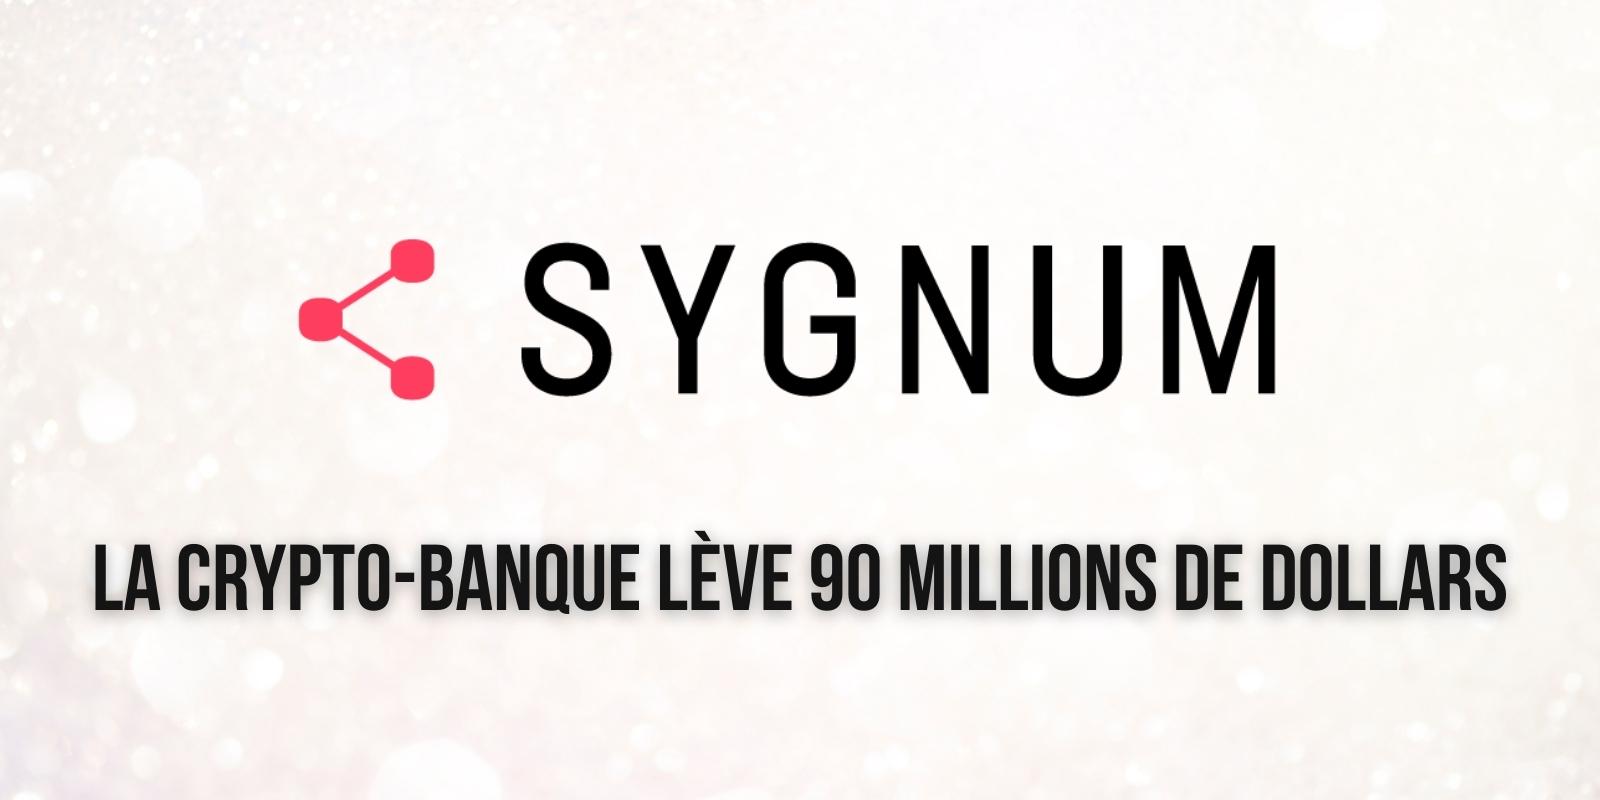 La crypto-banque Sygnum lève 90 millions de dollars et porte sa valorisation à 800 millions de dollars